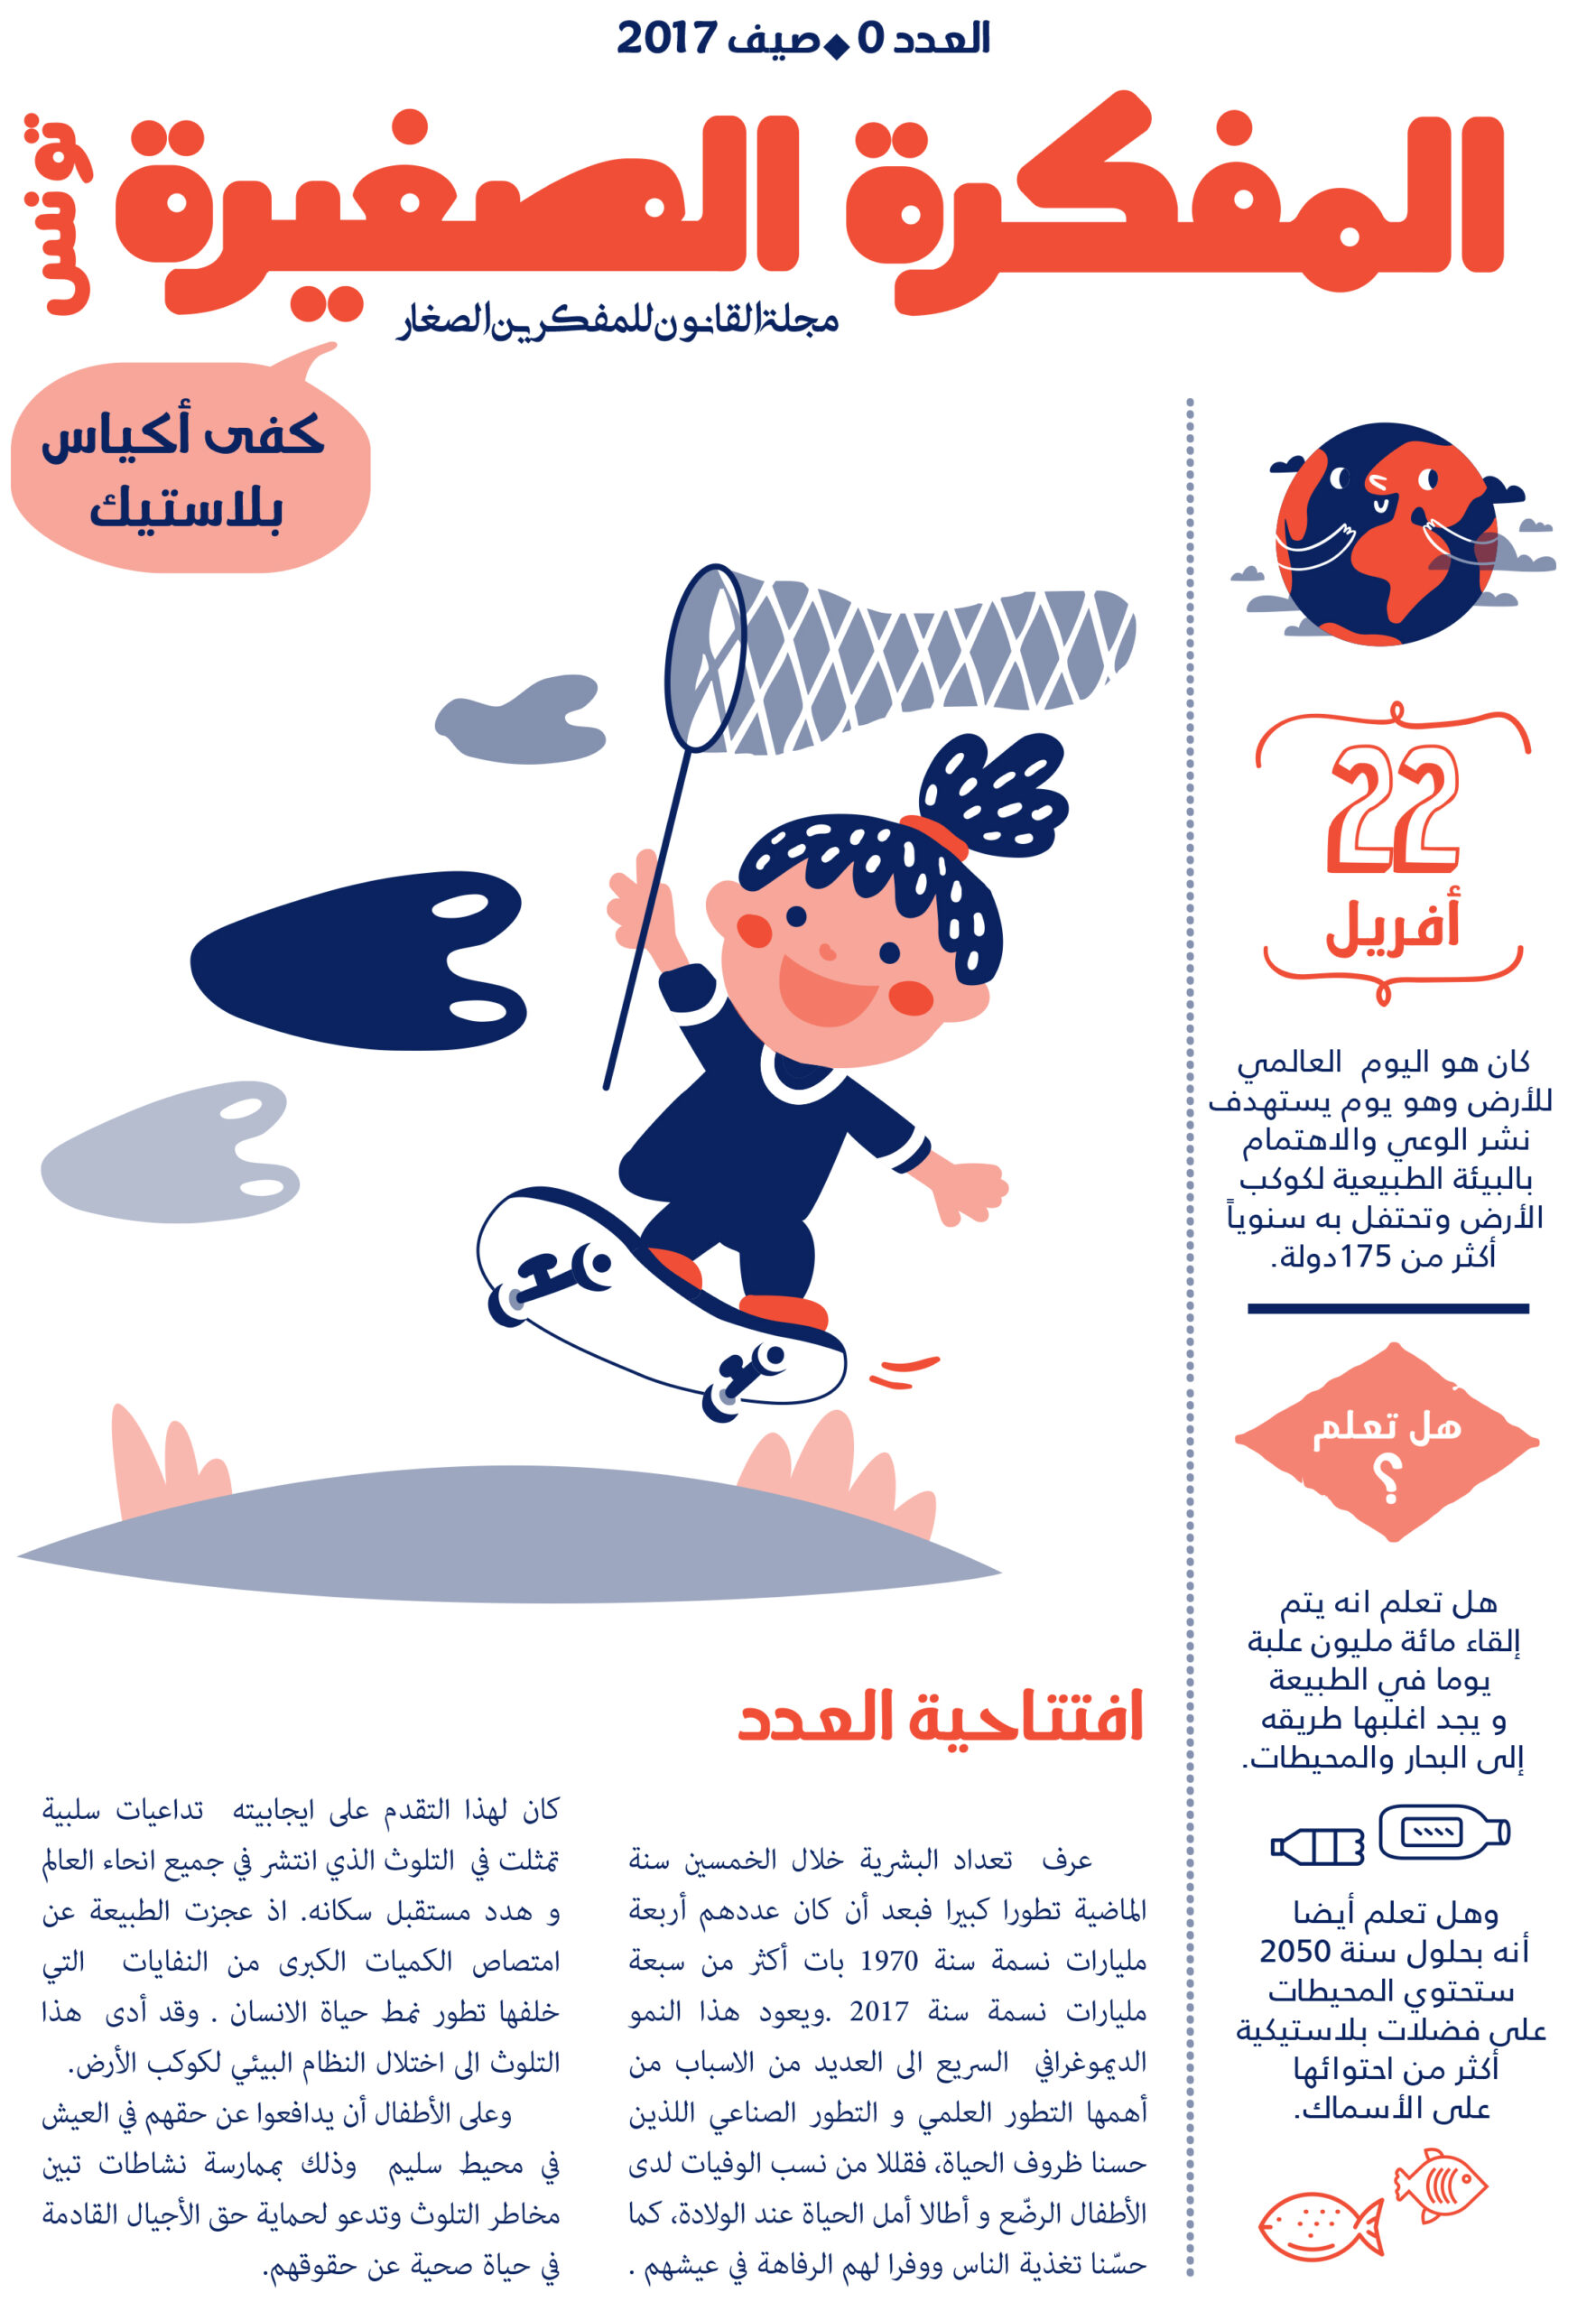 صدر العدد صفر من مجلة المفكرة الصغيرة في تونس: “كفى أكياس بلاستيك”